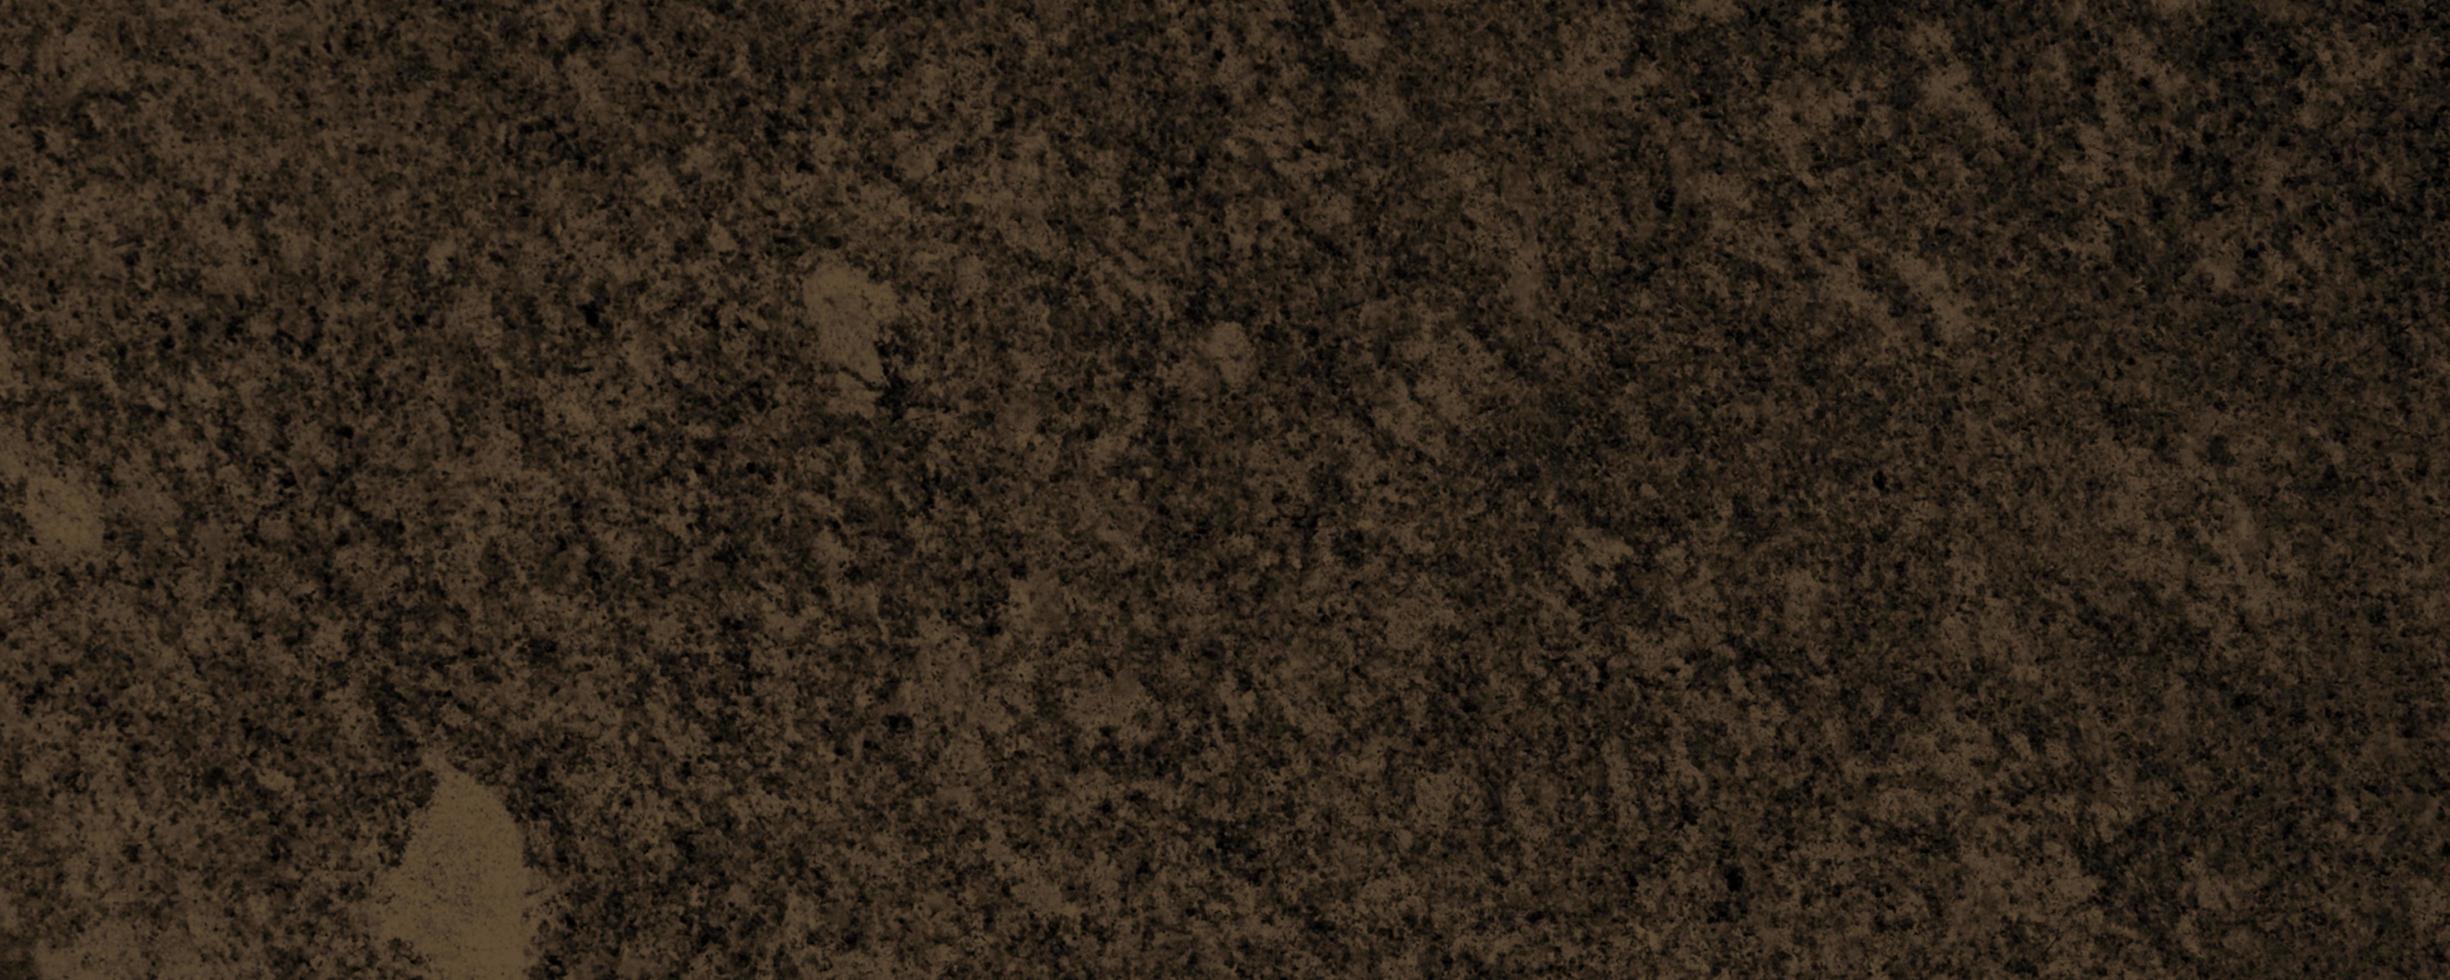 Marmormuster Textur Hintergrund foto